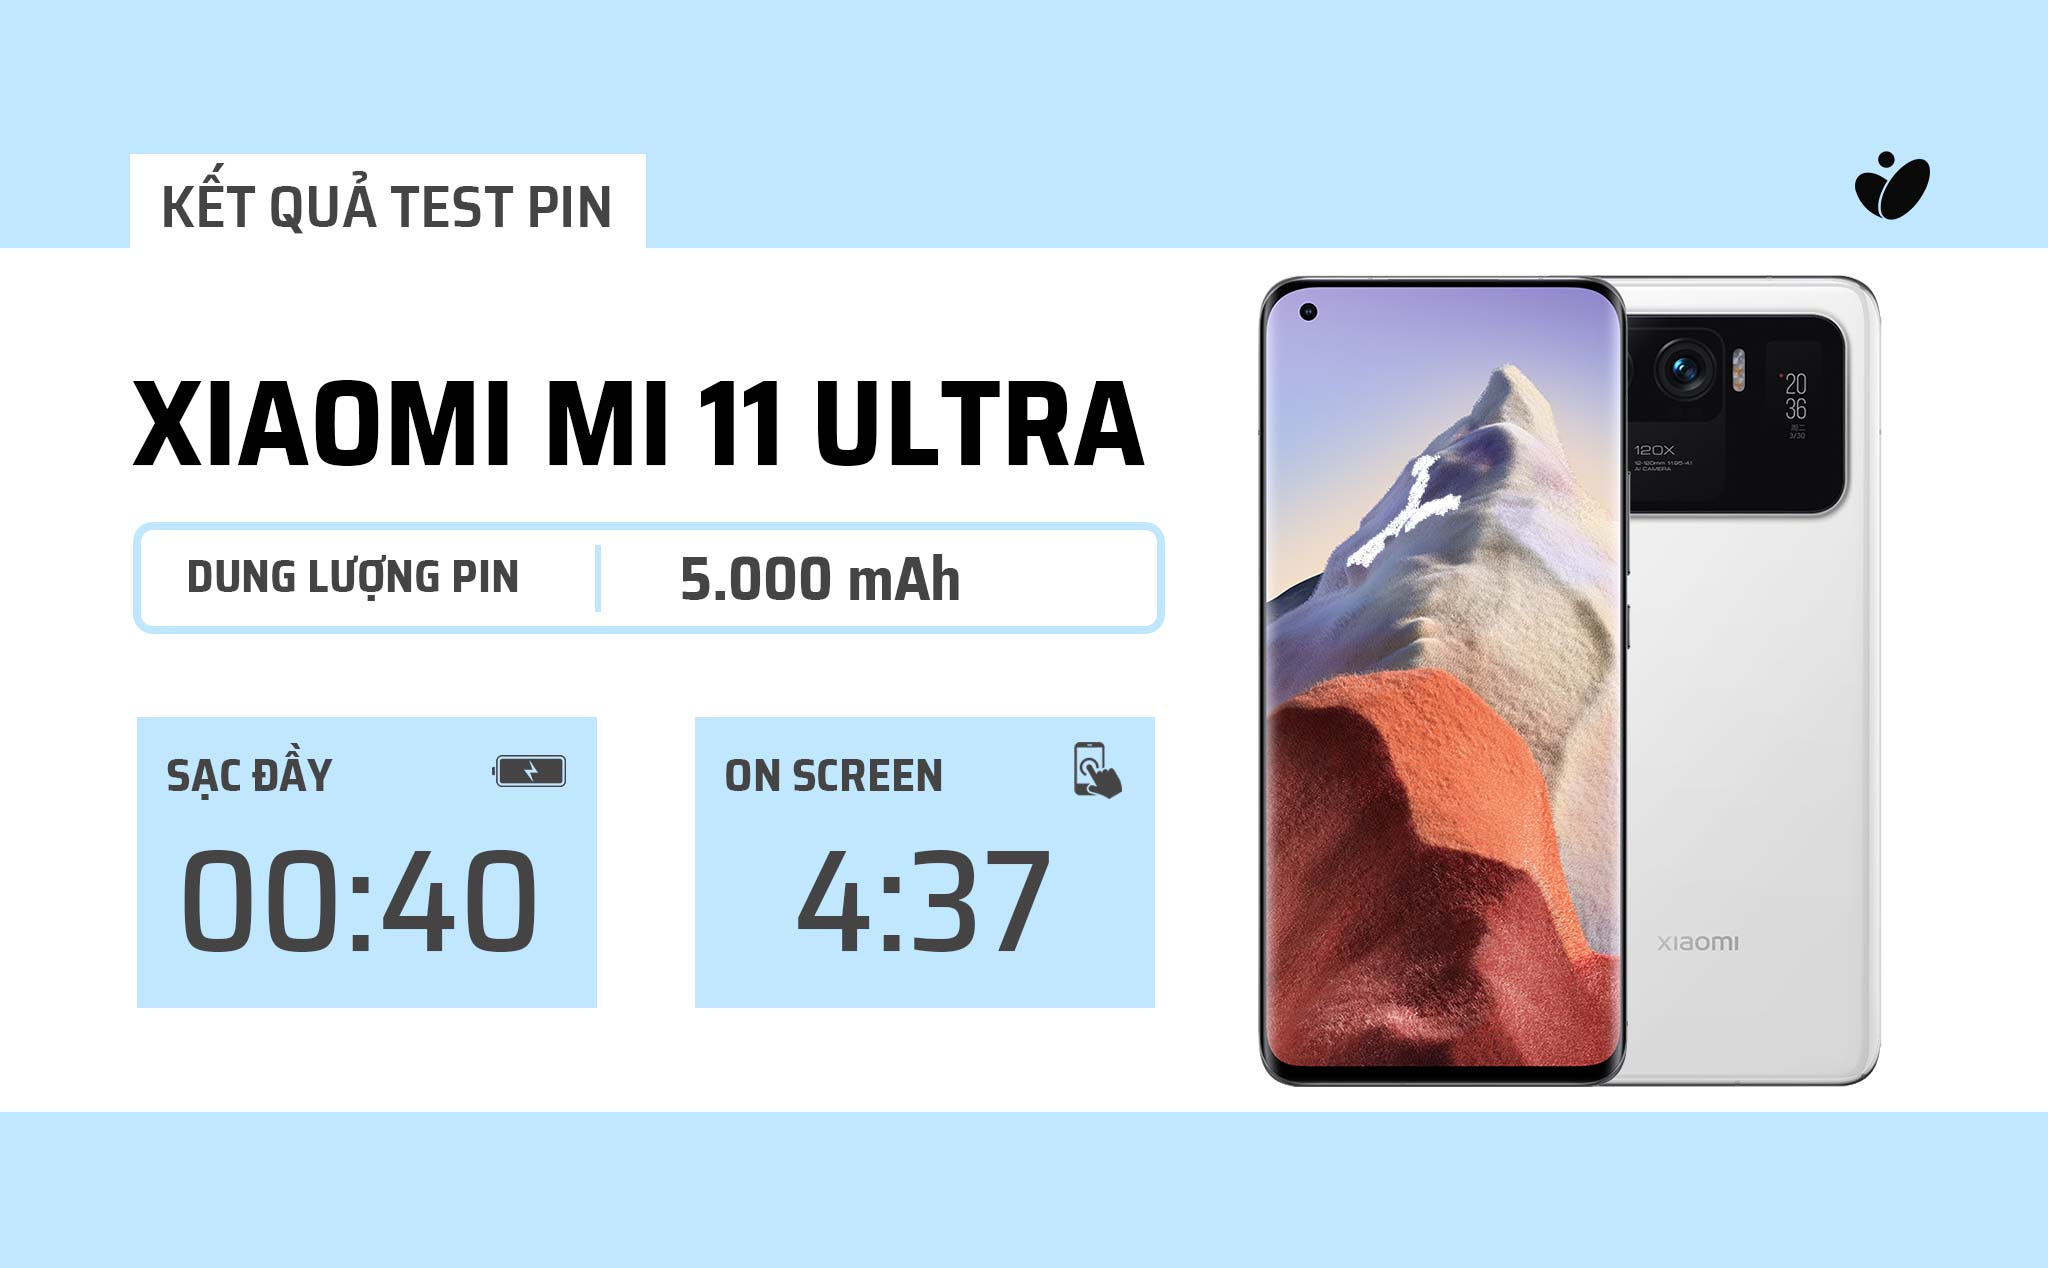 Người dùng đánh giá pin Xiaomi Mi 11 Ultra